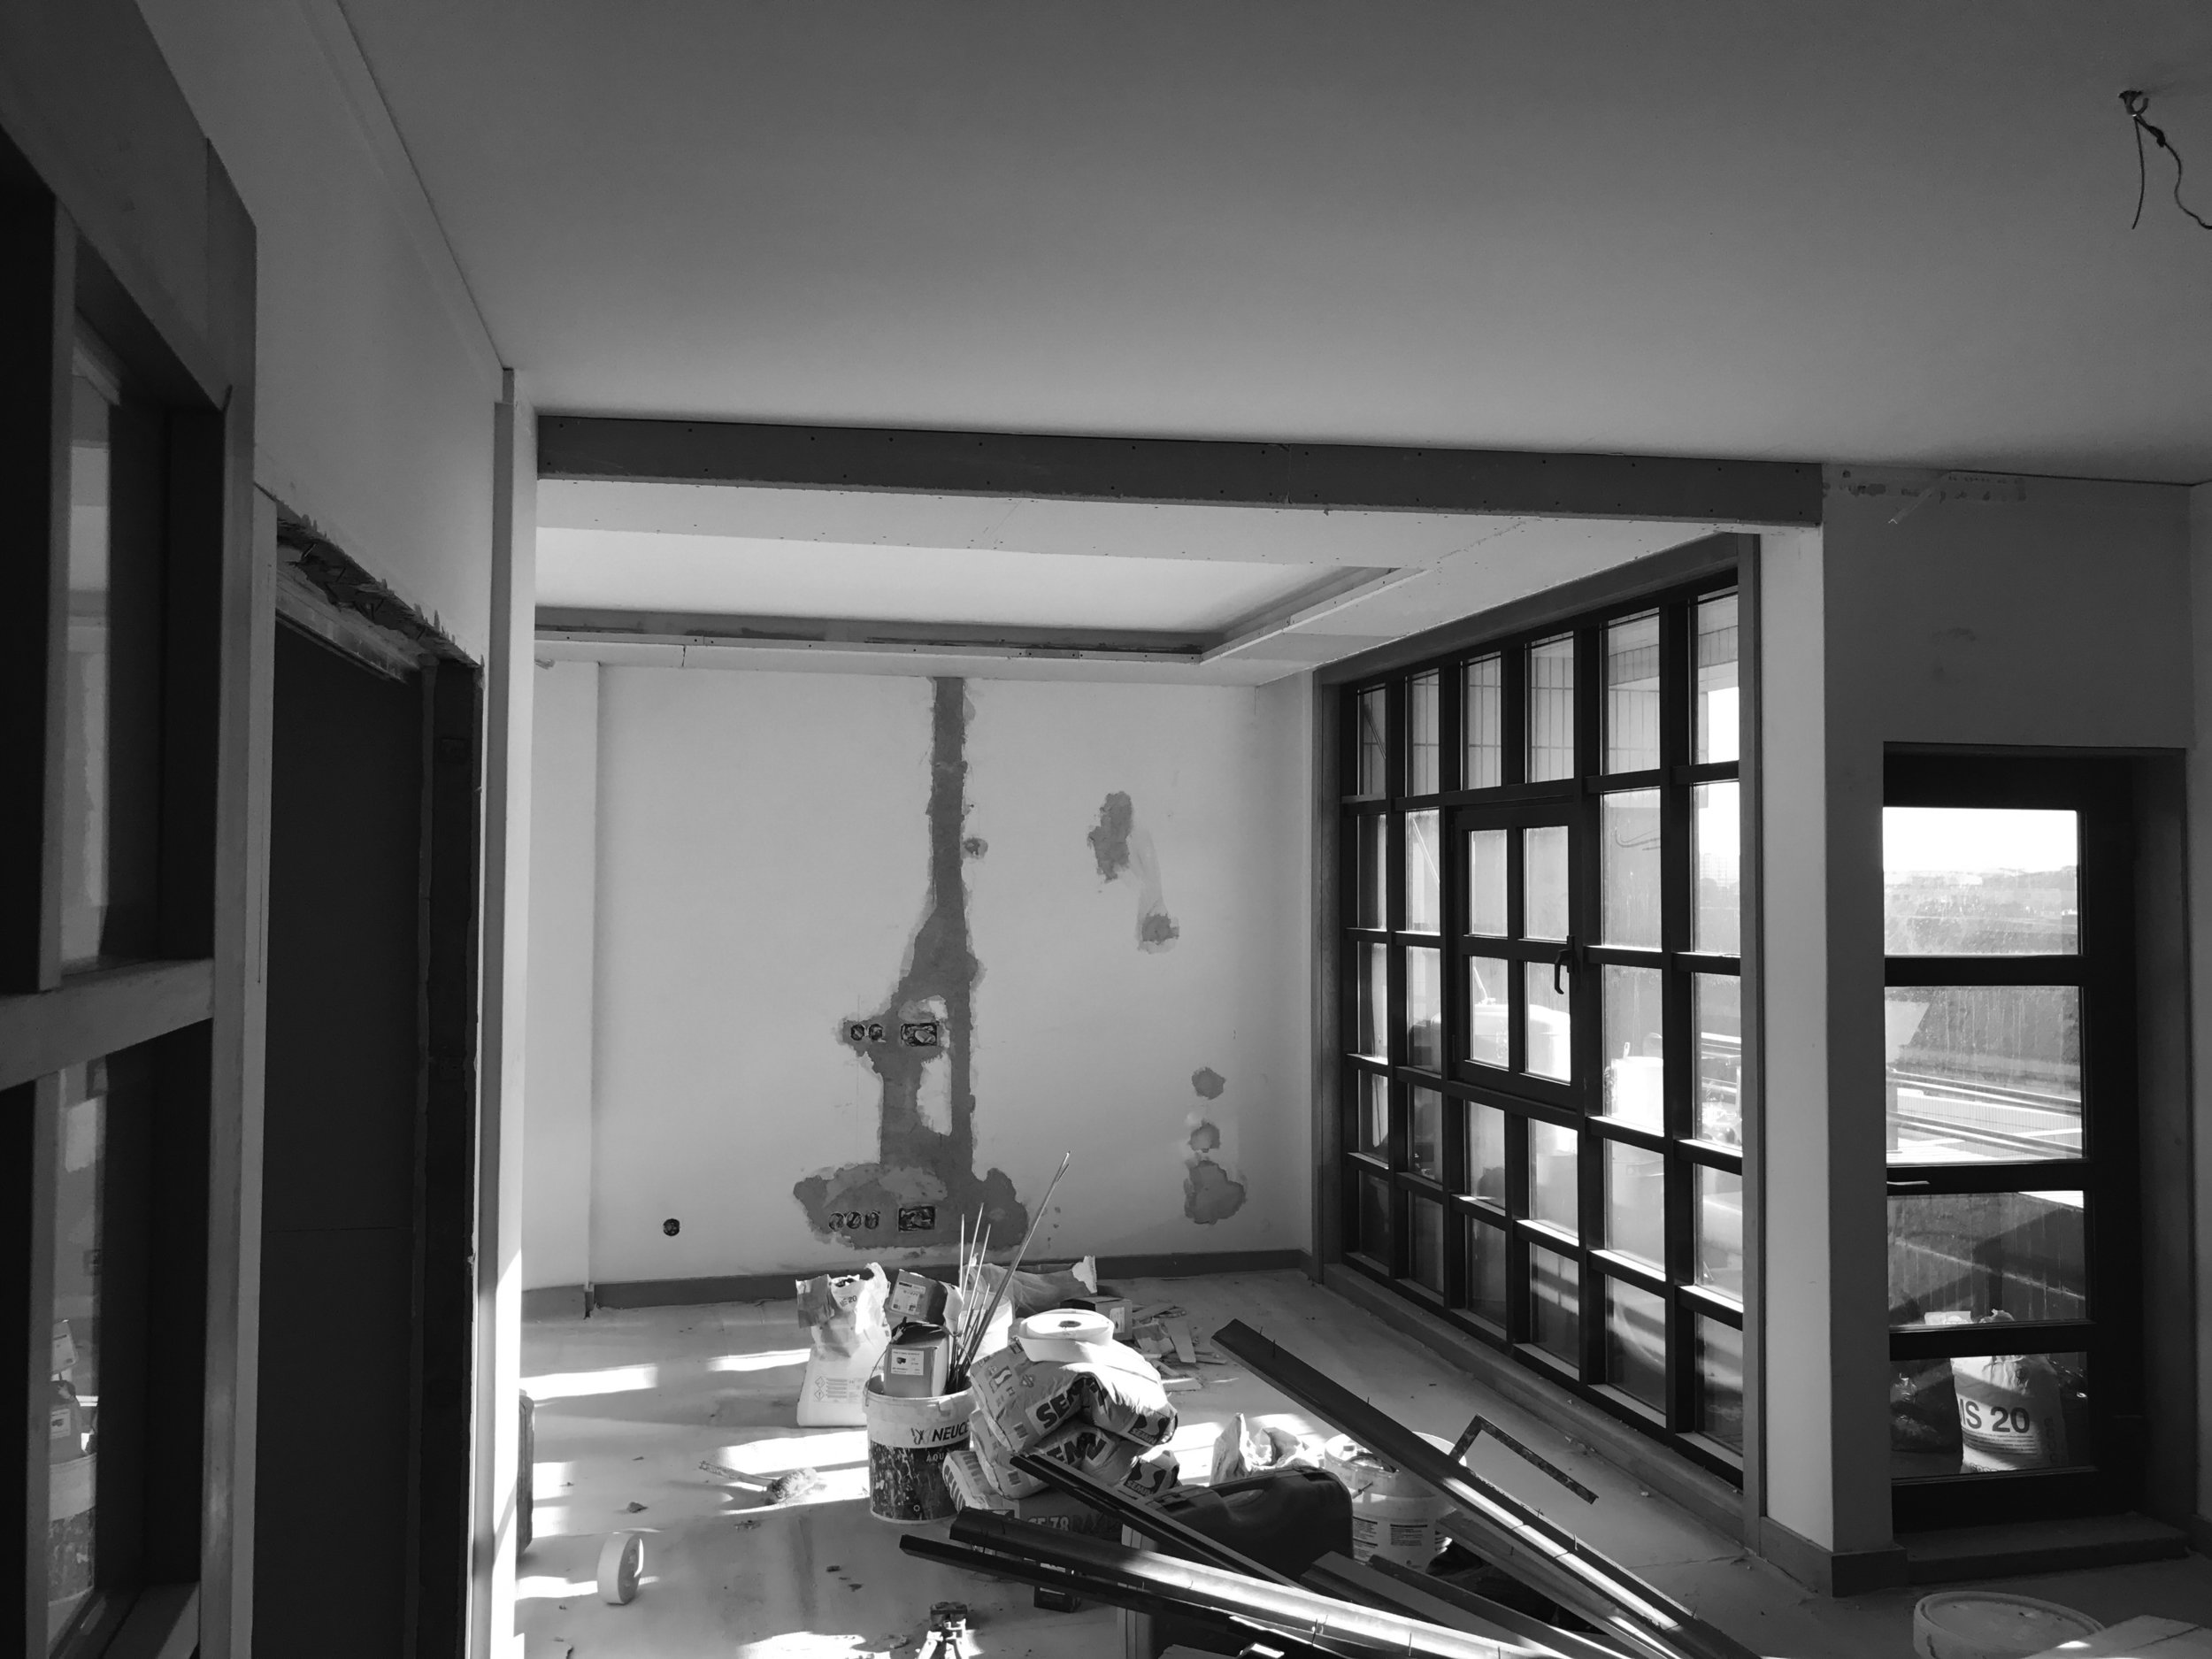 Apartamento Azul Farol - Porto - EVA evolutionary architecture - EVA atelier - Arquitecto - Remodelação (8).jpg